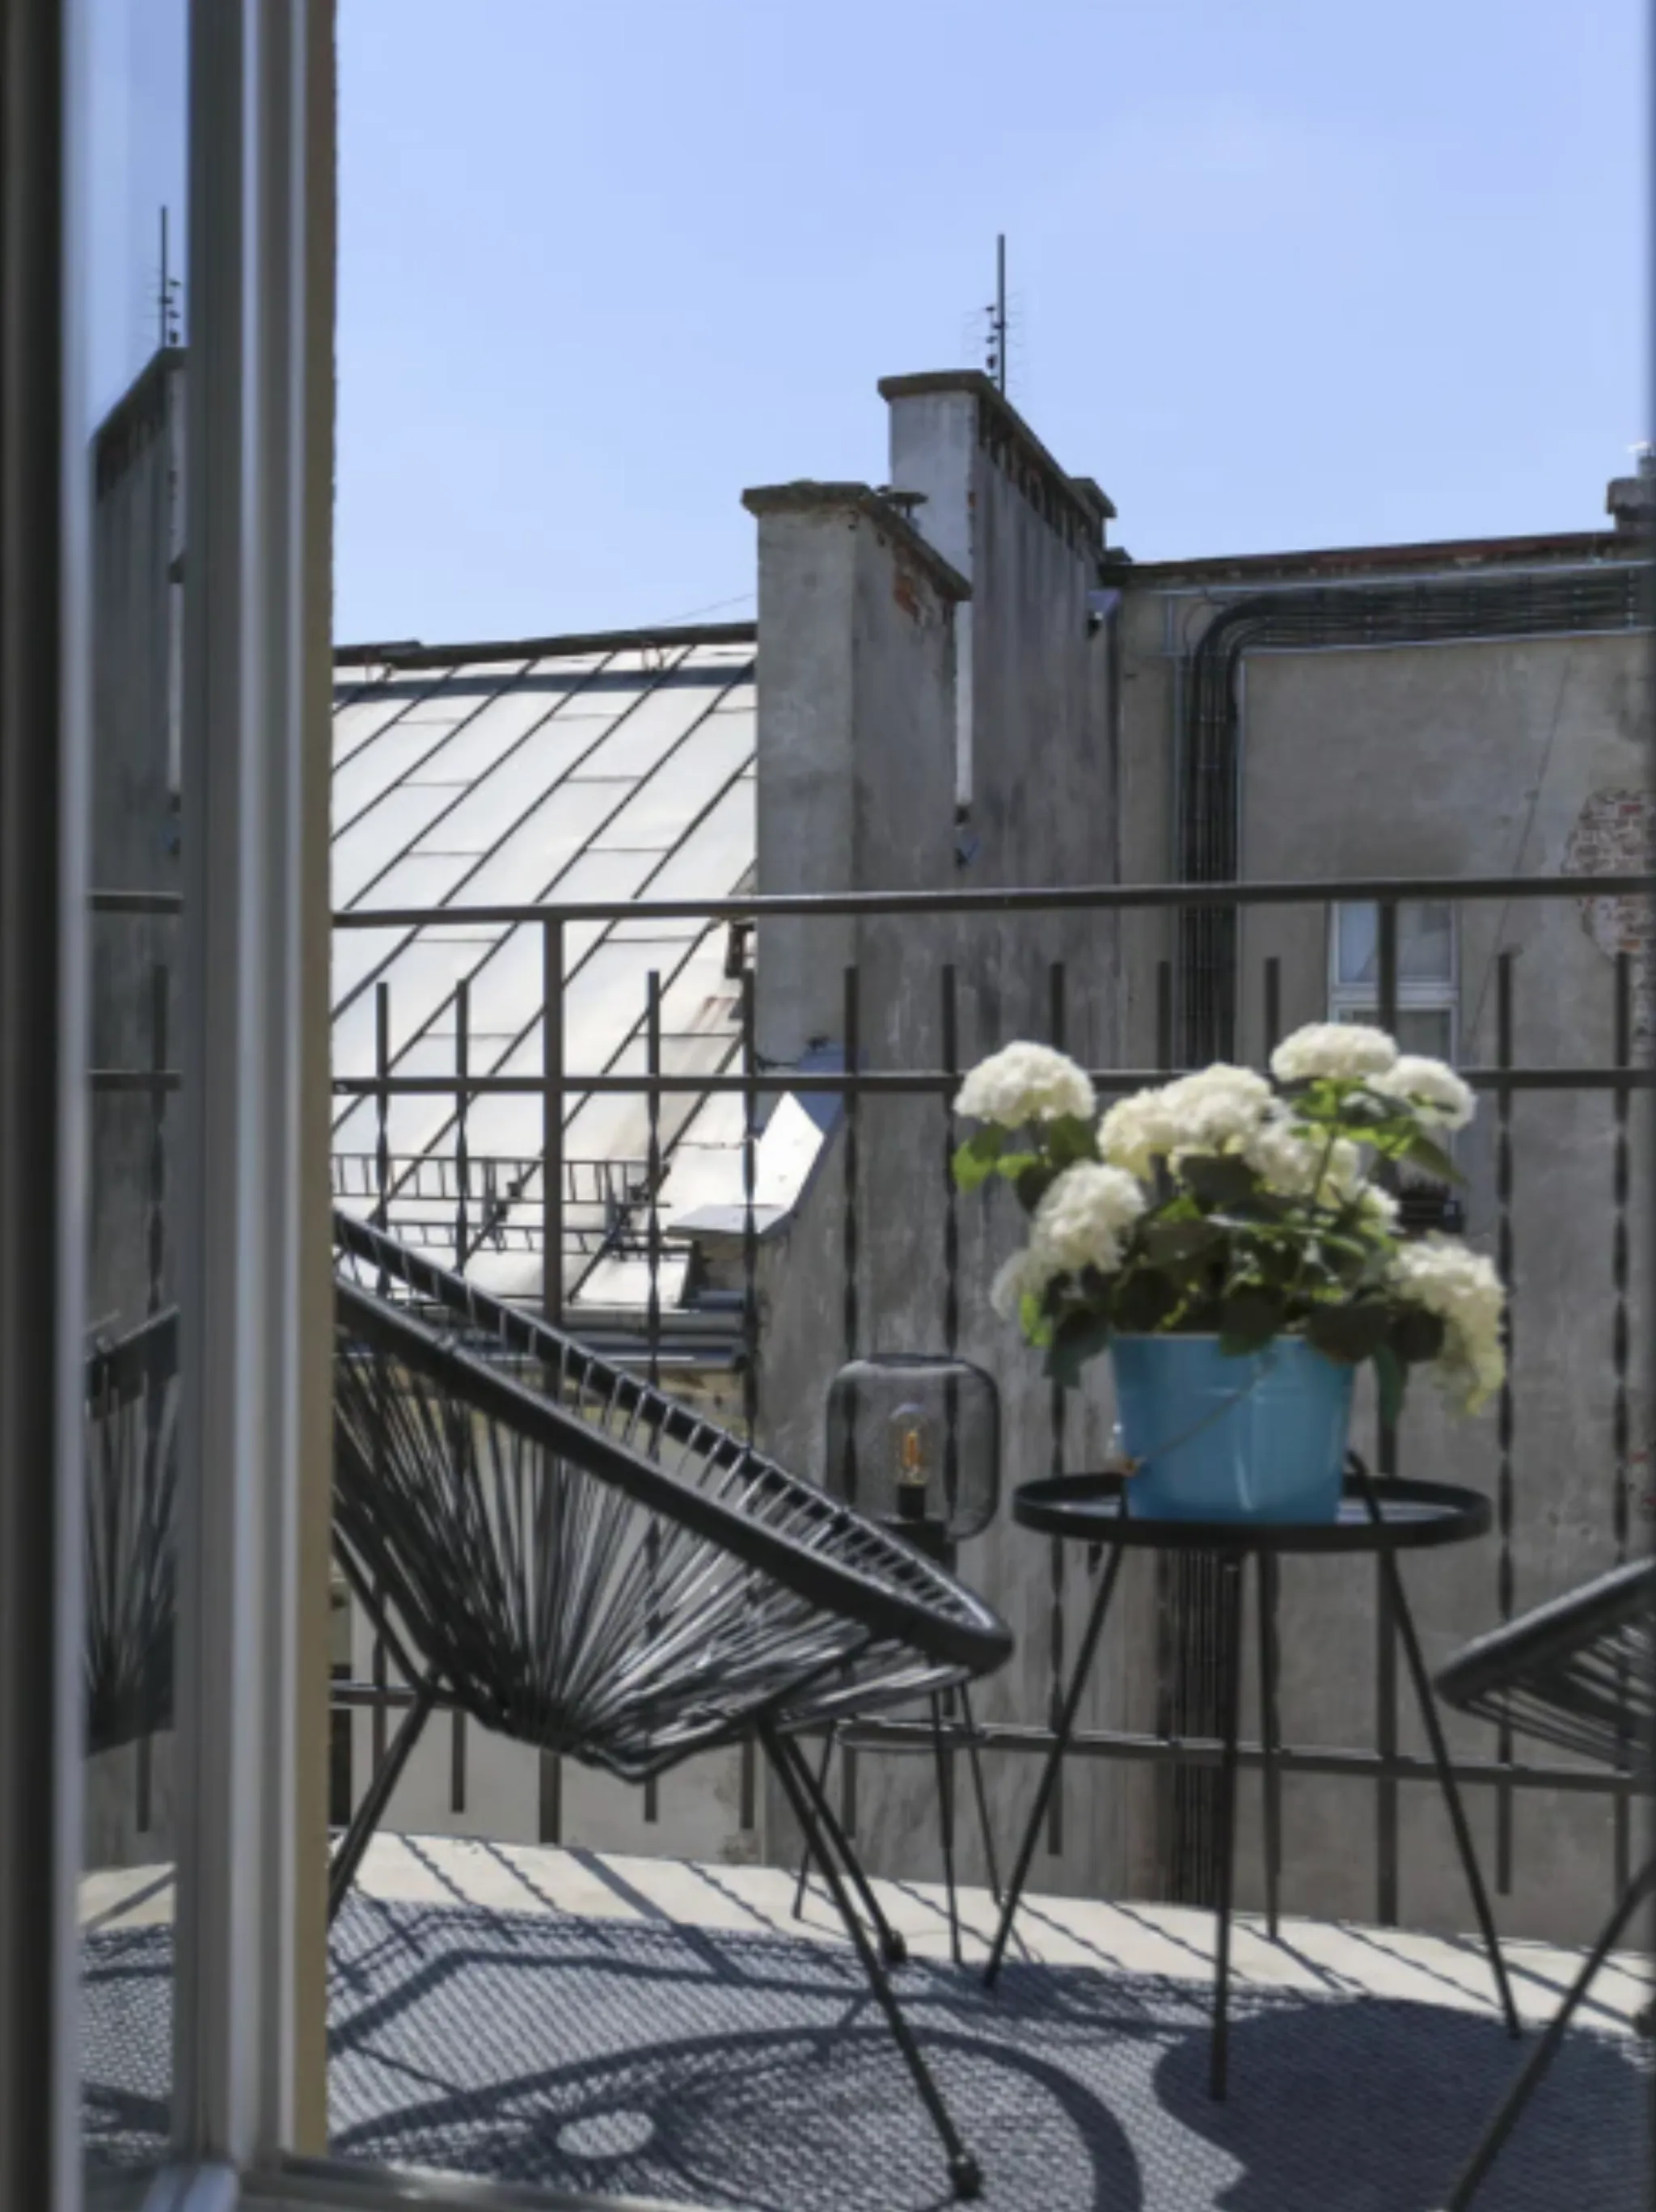 Kazimierz, 49m2, piękny apartament, odnowiona kamienica, balkon, winda - Mieszkanie na sprzedaż Kraków